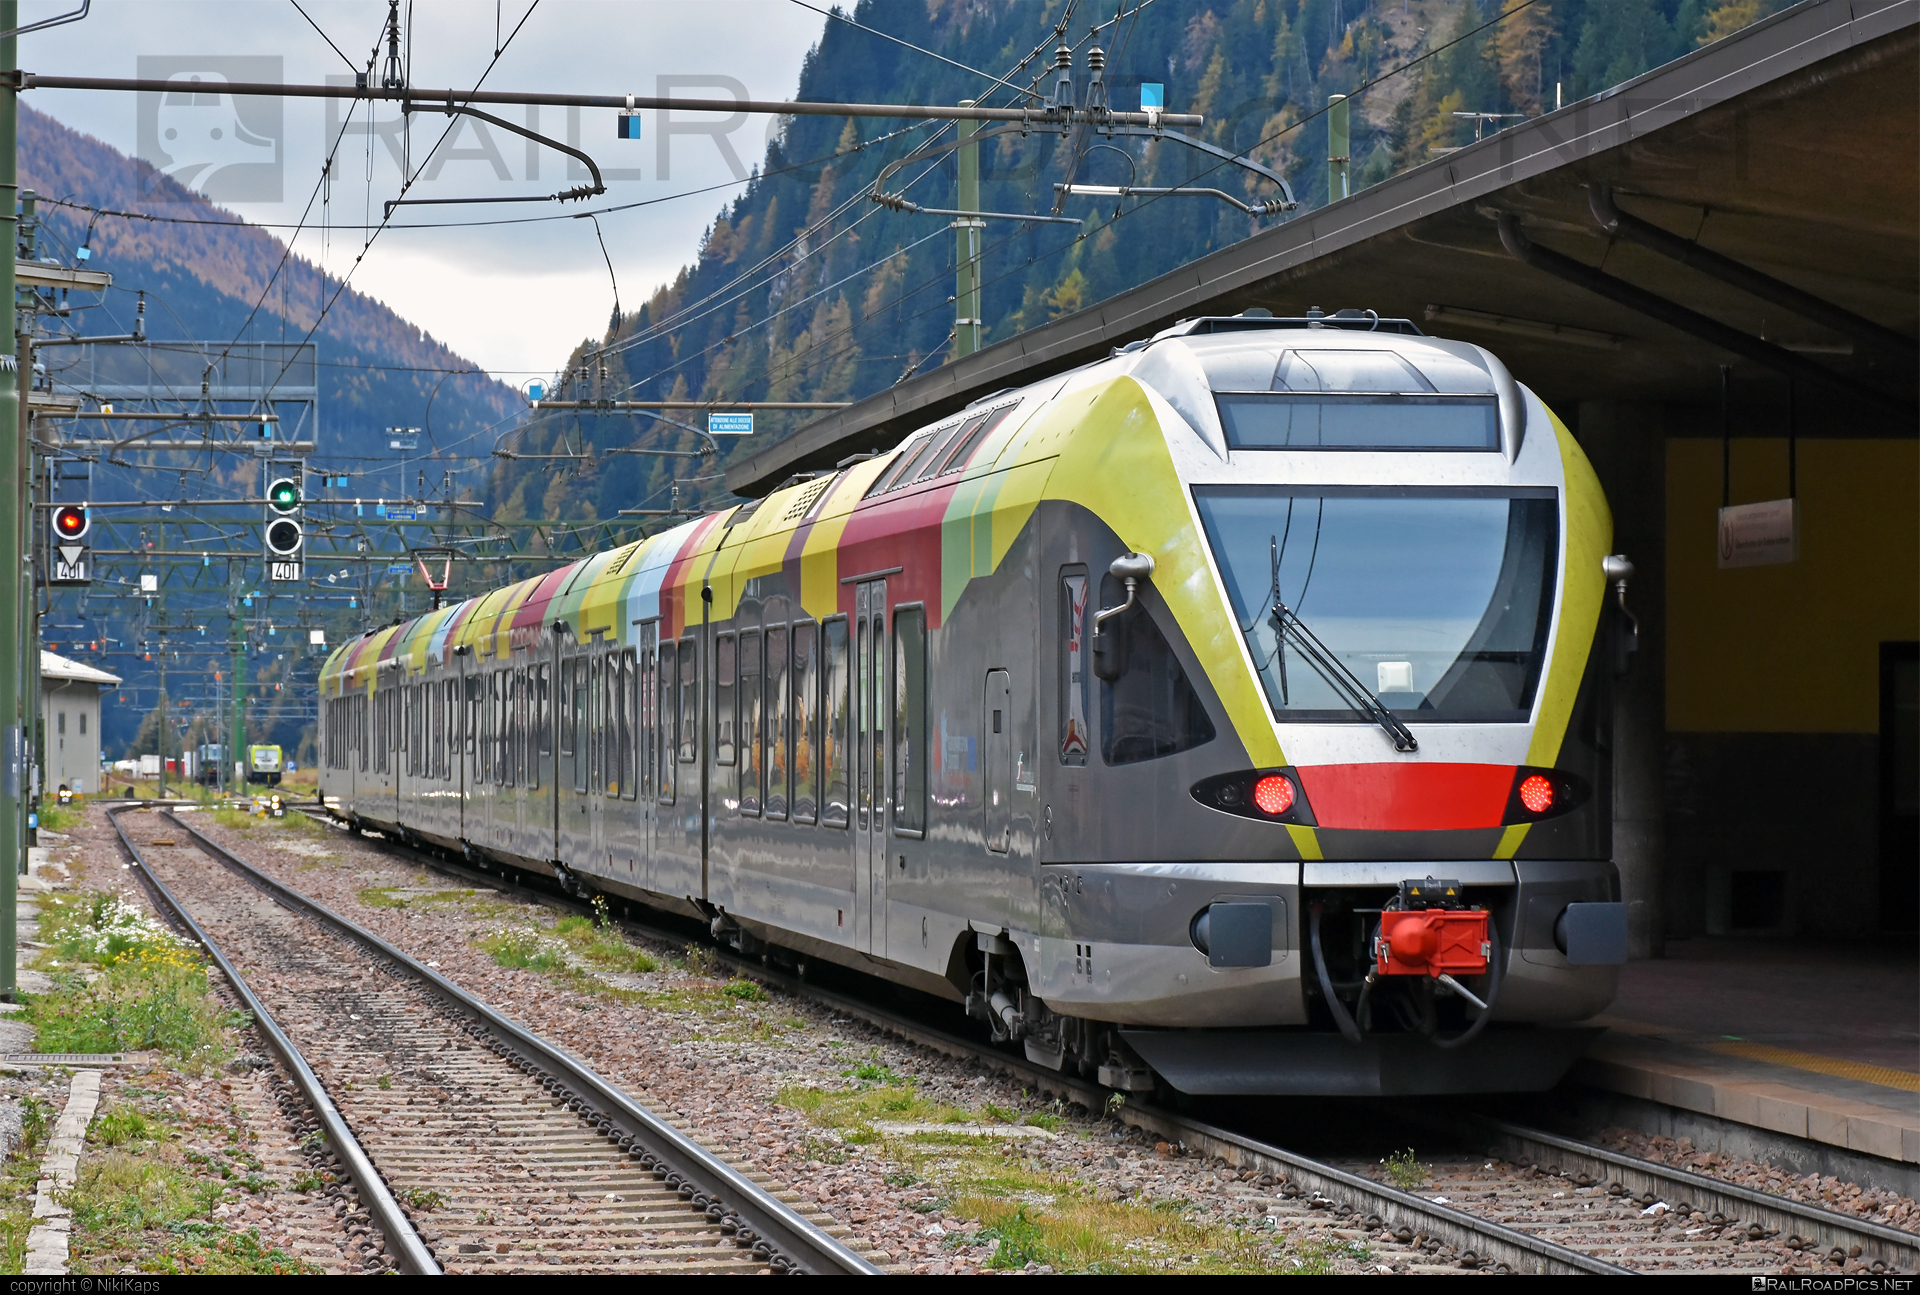 Stadler FLIRT - 170 298 operated by SAD S.p.A. #ferroviedellostato #fs #fsitaliane #sad #stadler #stadlerFlirt #stadlerrail #stadlerrailag #trenitalia #trenitaliaspa